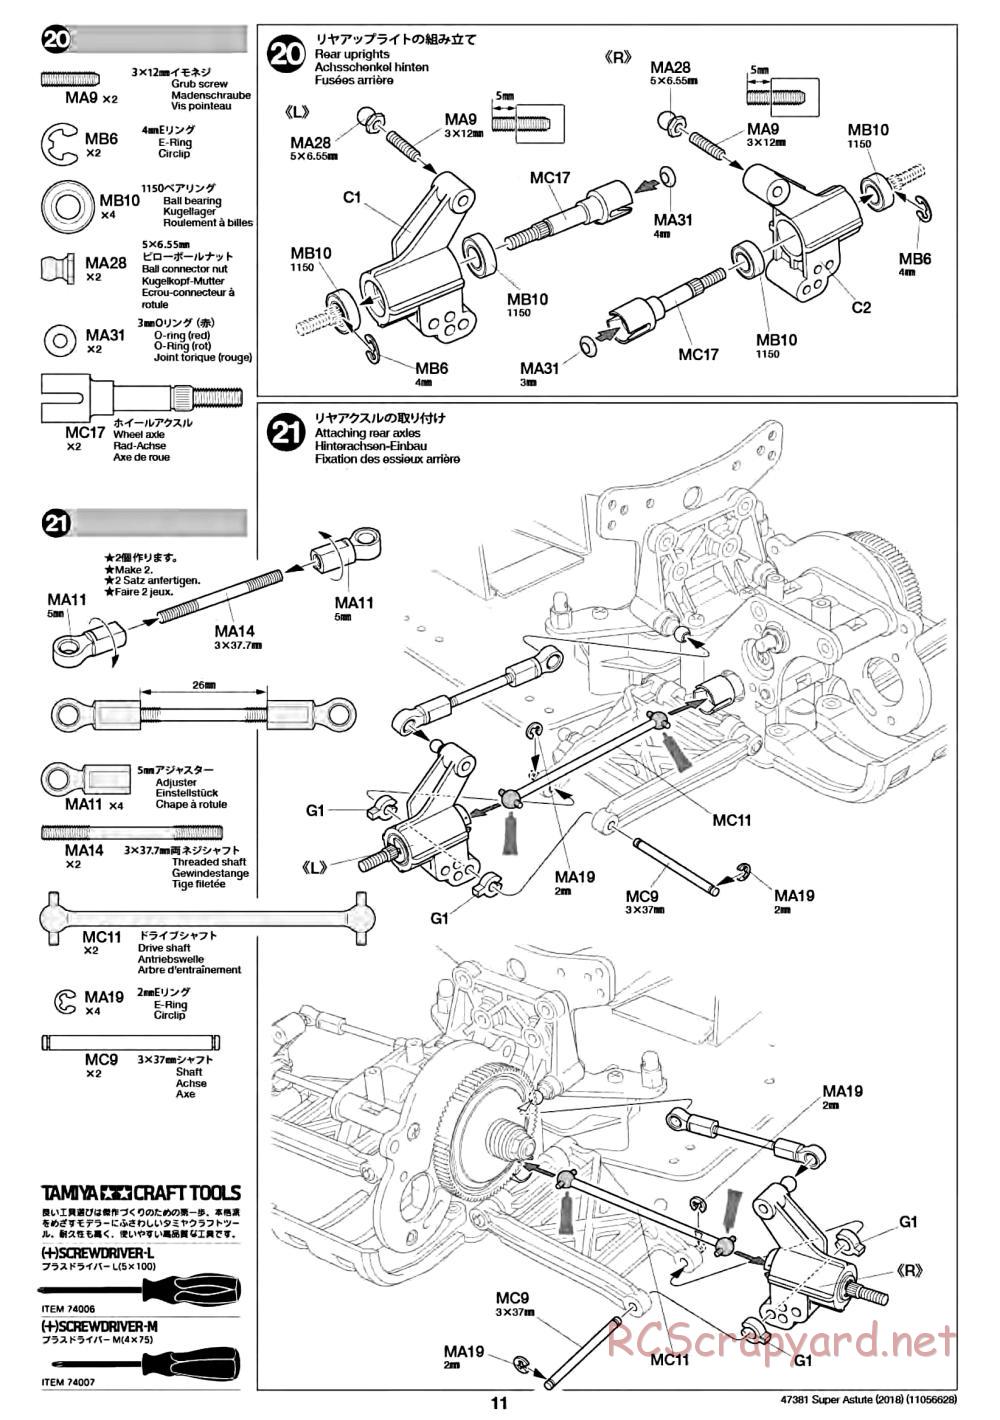 Tamiya - Super Astute (2018) Chassis - Manual - Page 11